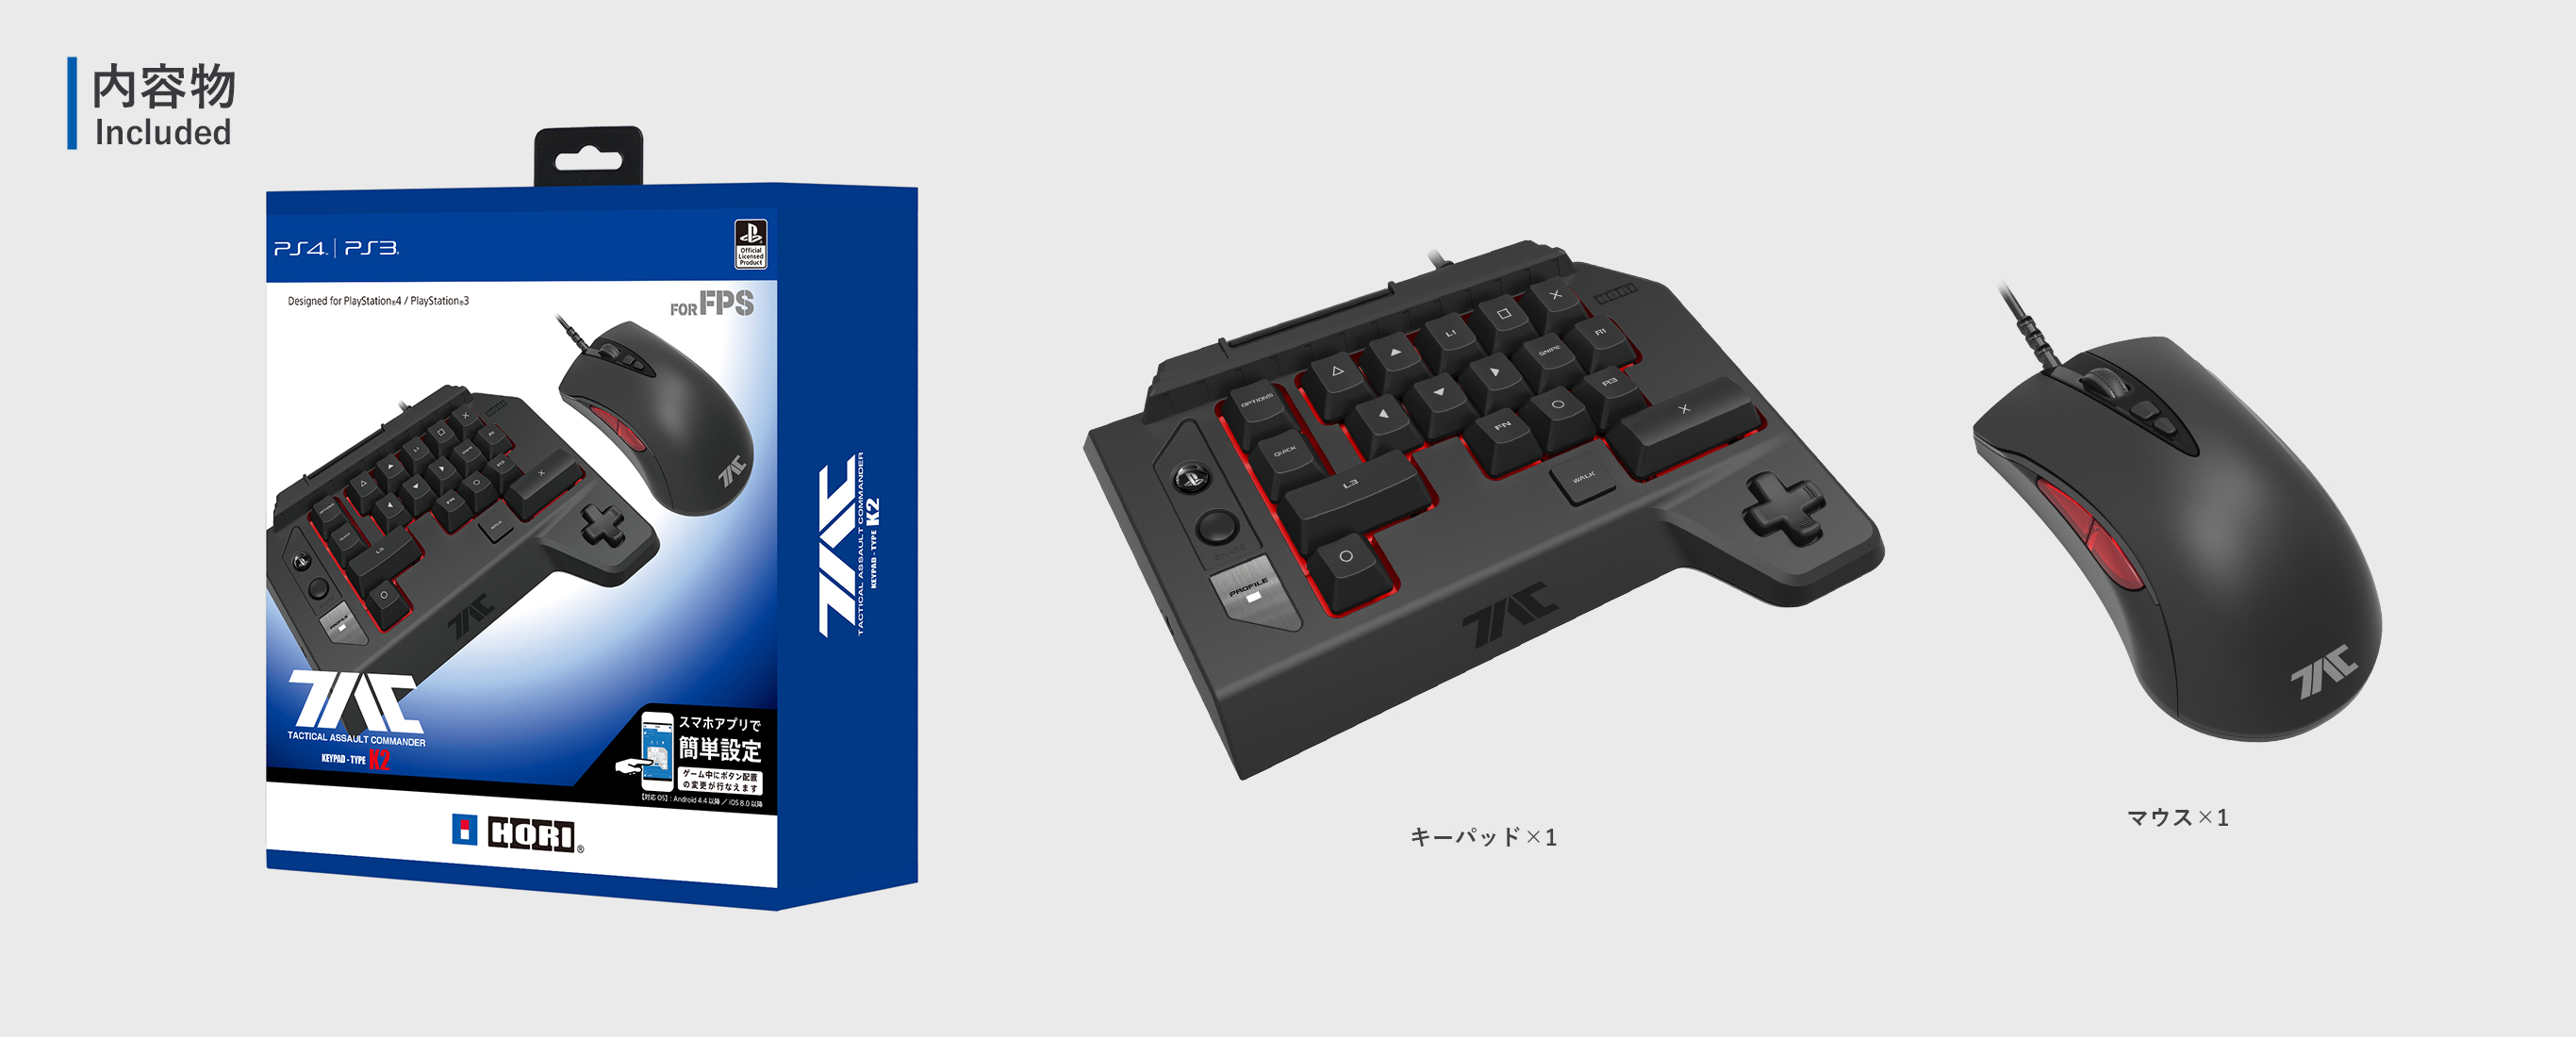 株式会社 HORI | タクティカルアサルトコマンダー キーパッドタイプ K2 for PlayStation®4 / PlayStation®3 /  PC